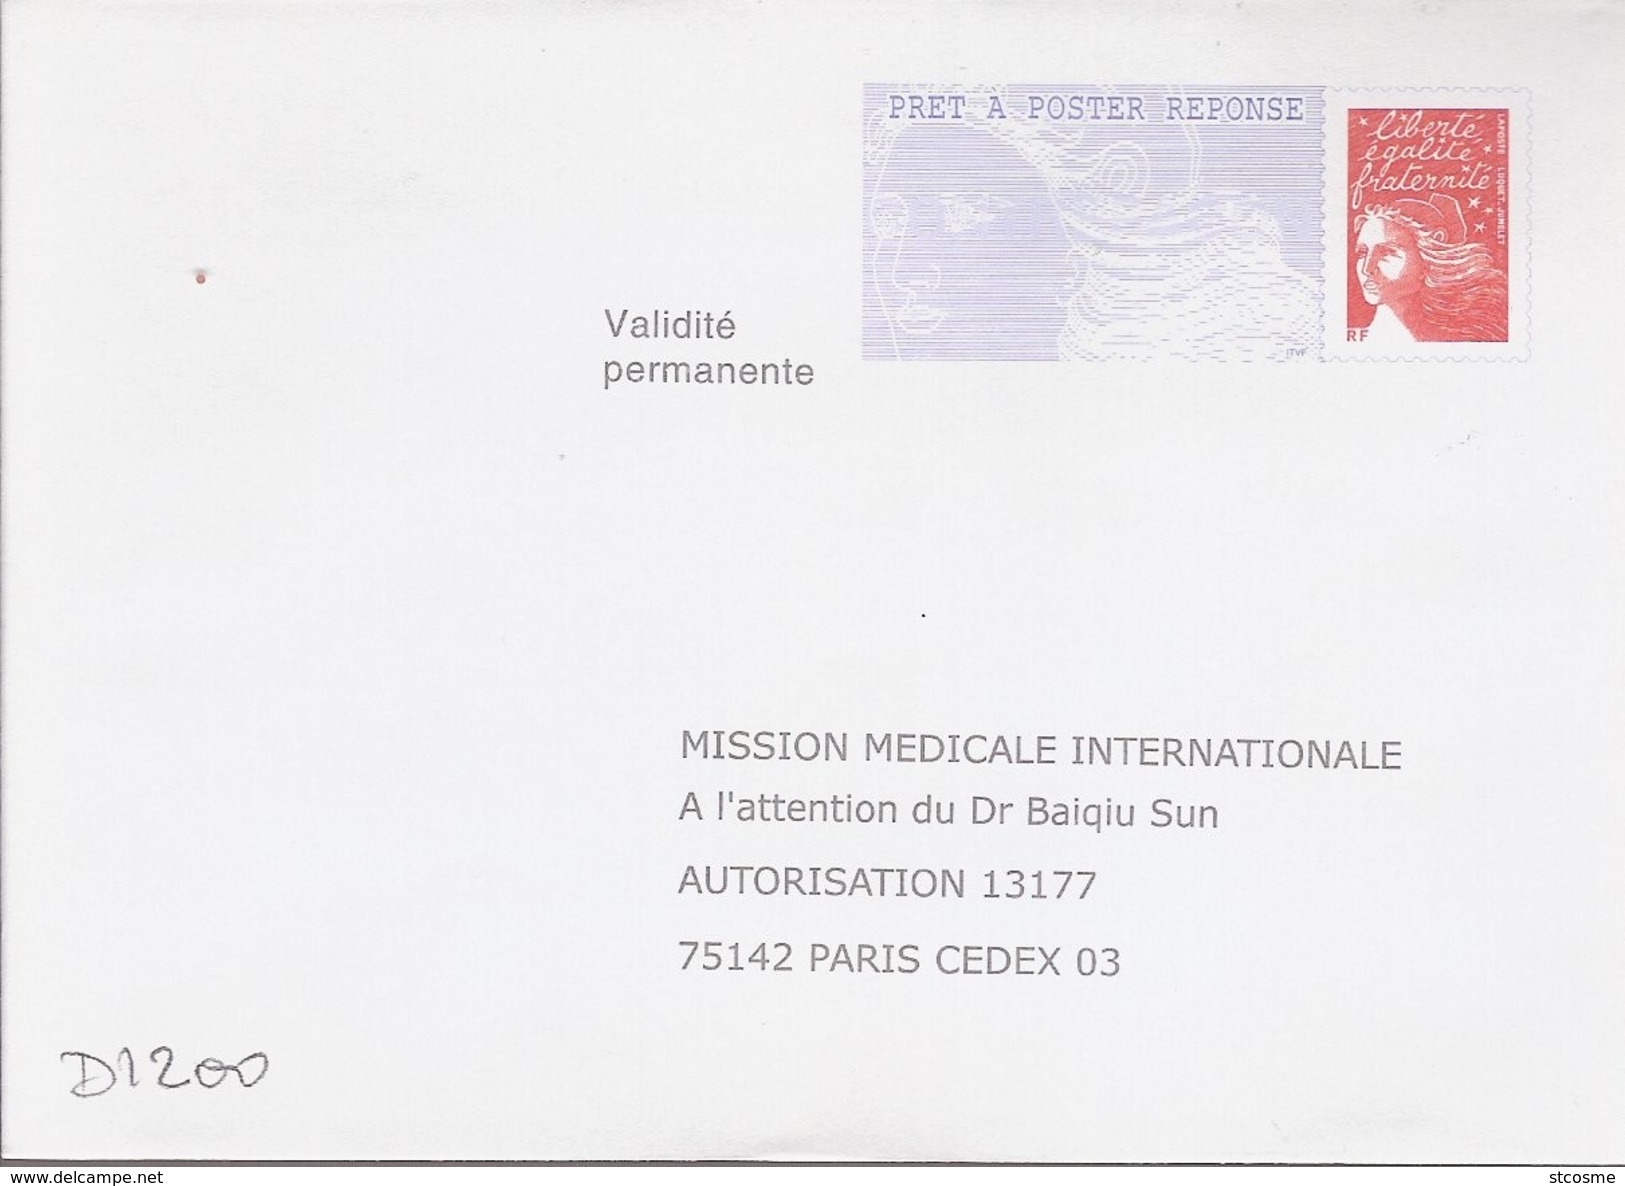 D1200 Entier / Stationery / PSE - PAP Réponse Luquet - Mission Médicale Internationale - N° D'agrément 0204500 - Prêts-à-poster: Réponse /Luquet